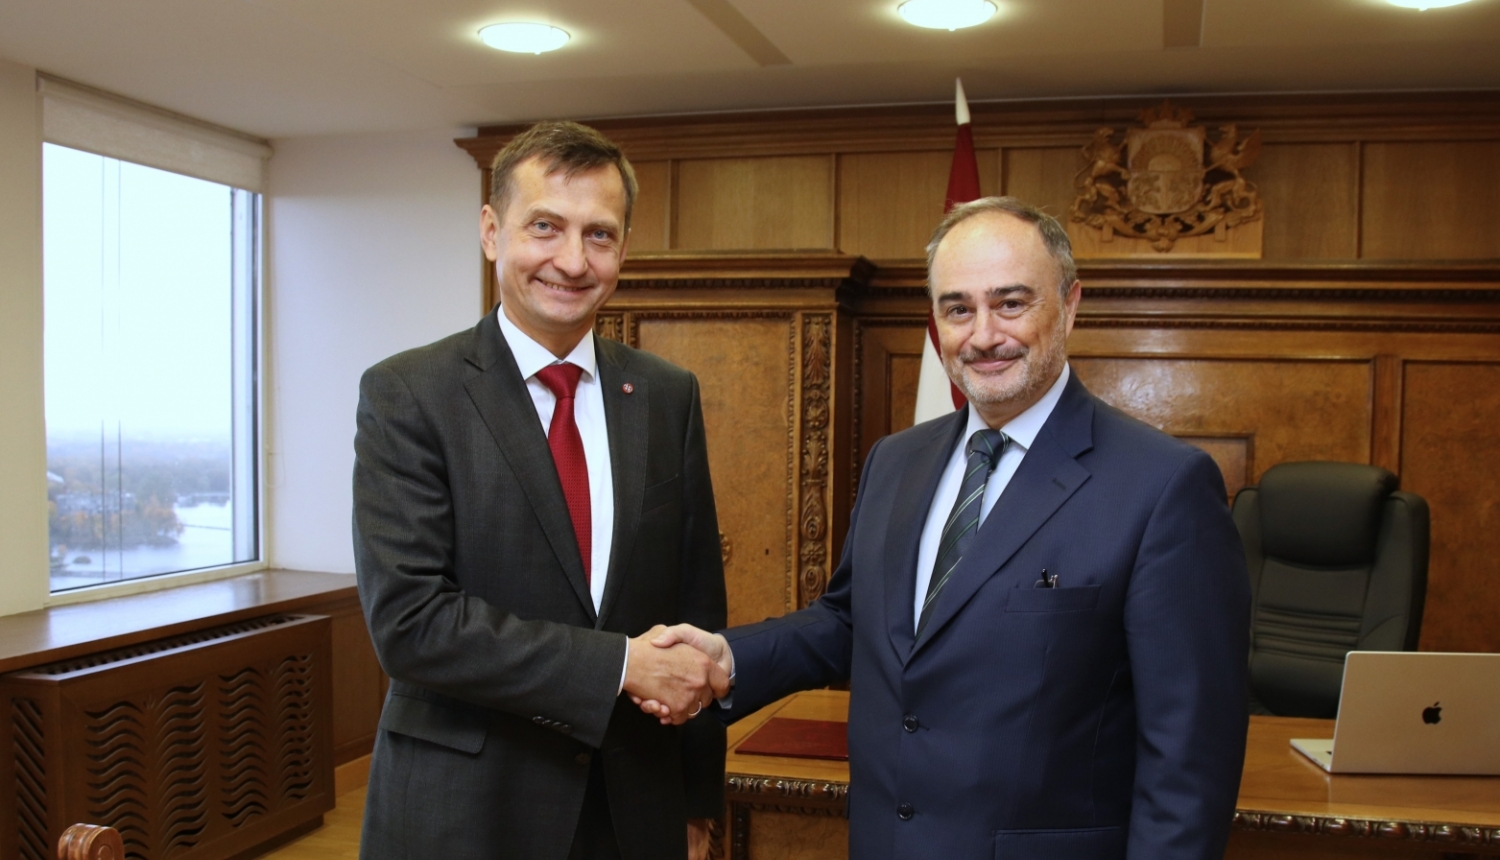 zemkopības ministrs Armands Krauze sarokojas ar Itālijas vēstnieku